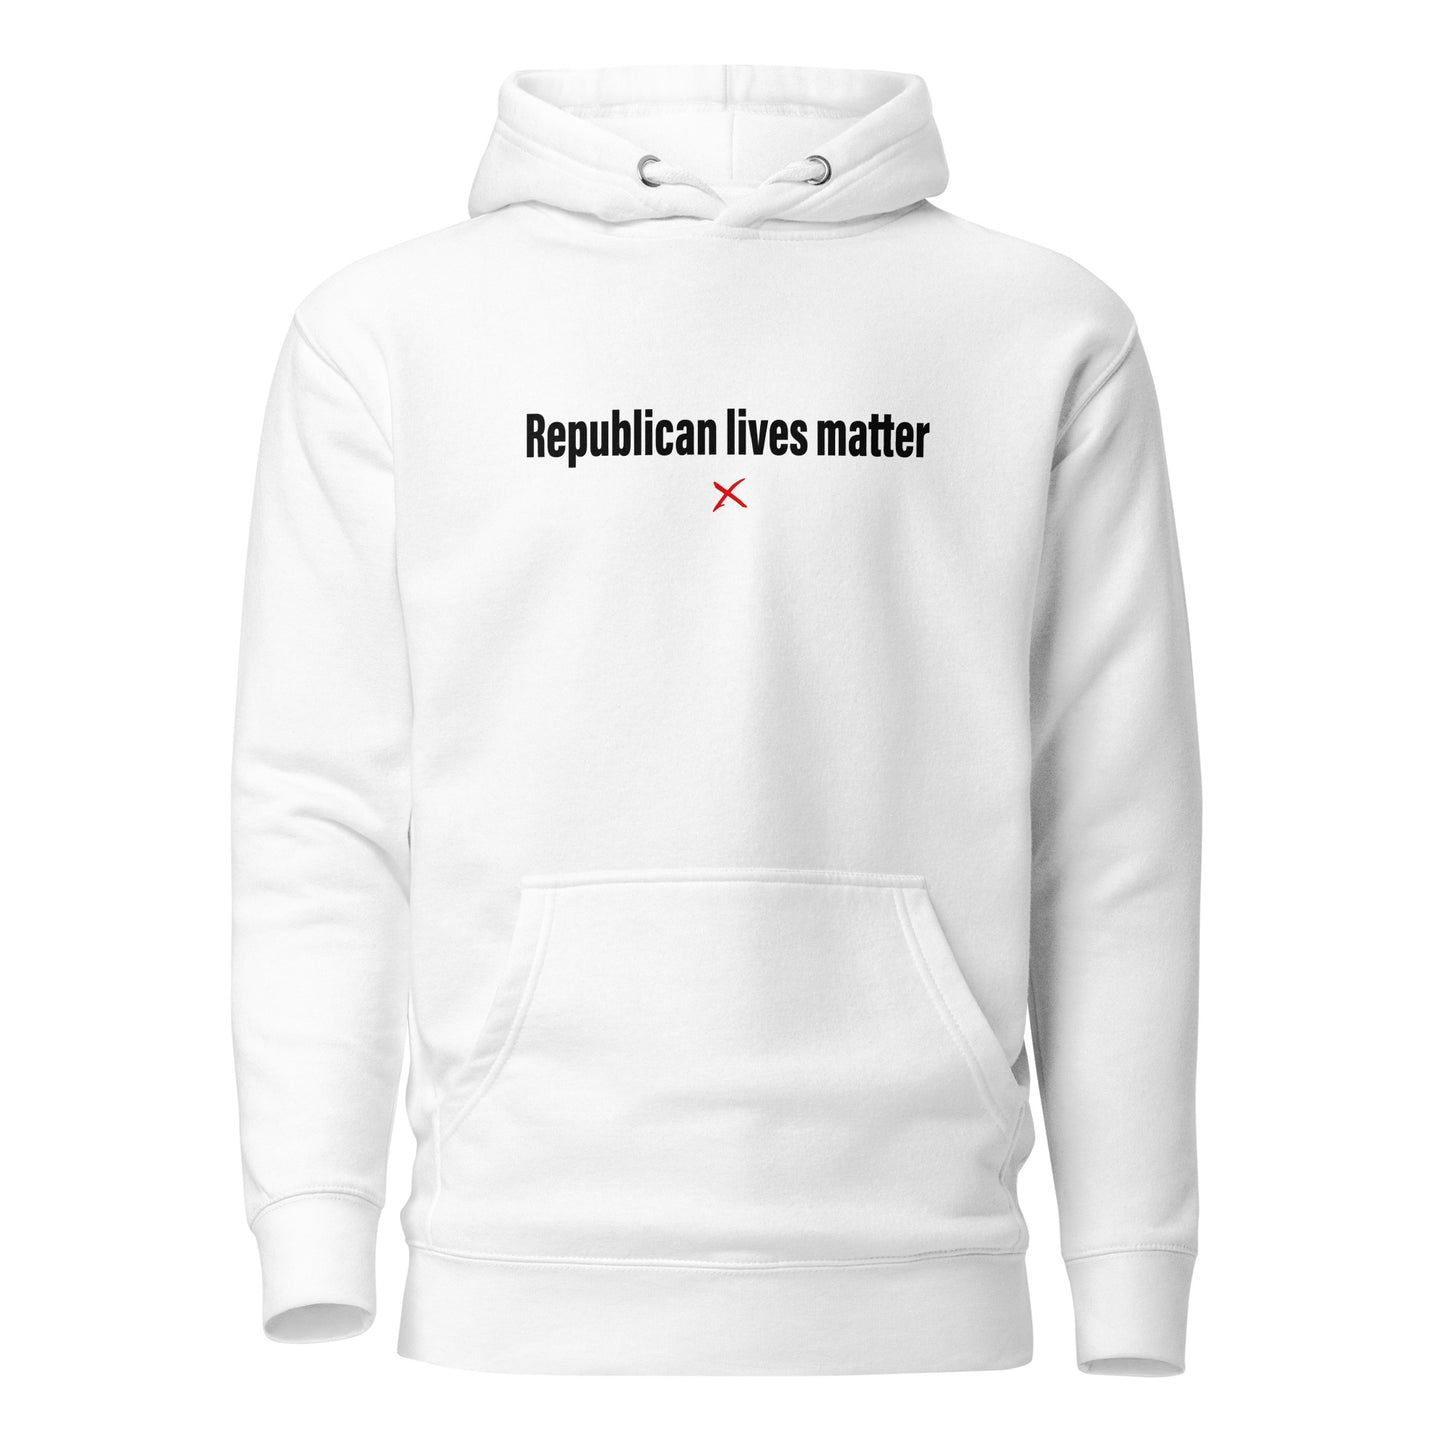 Republican lives matter - Hoodie